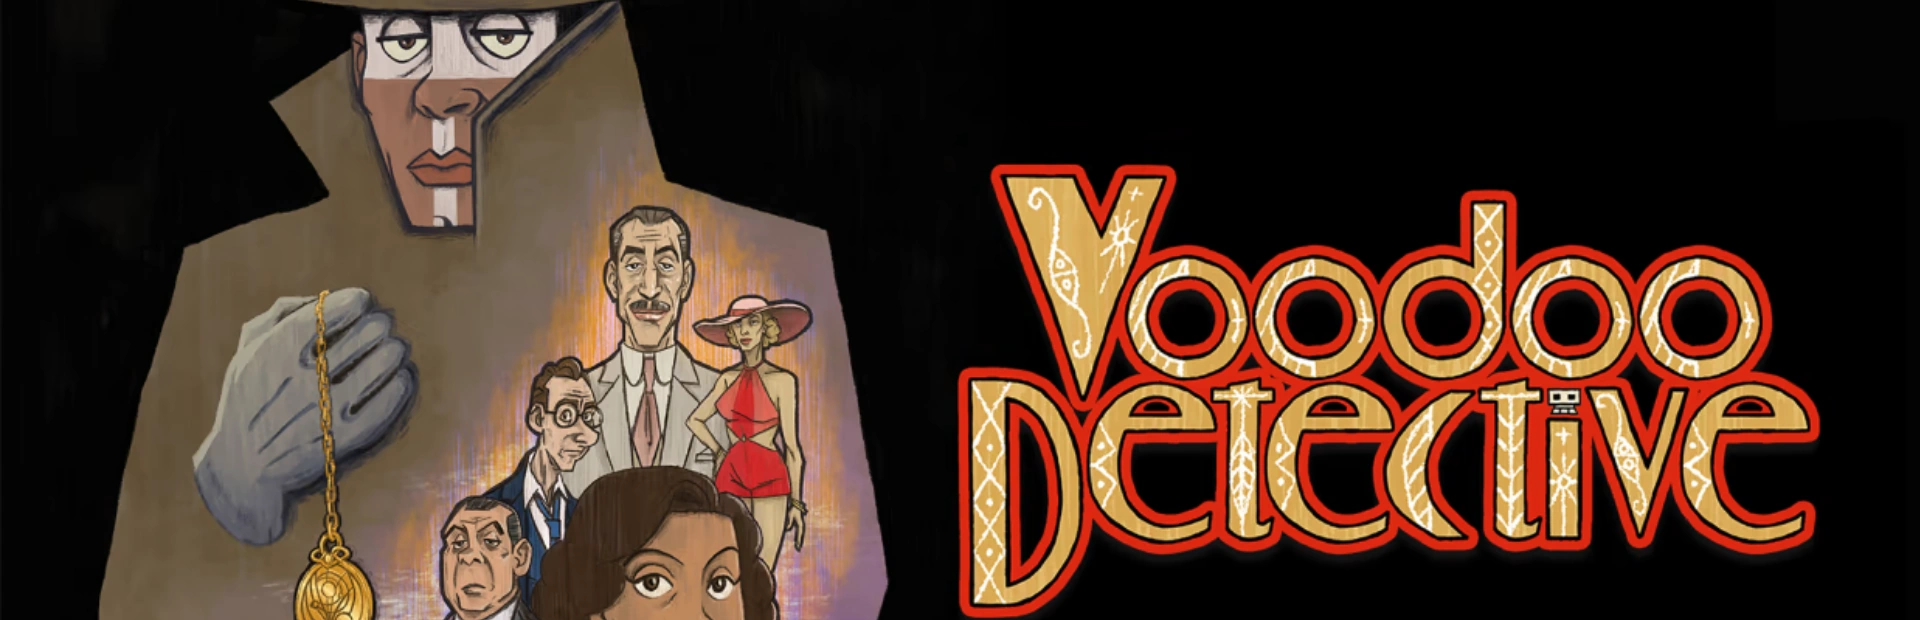 دانلود بازی Voodoo Detective برای کامپیوتر | گیمباتو